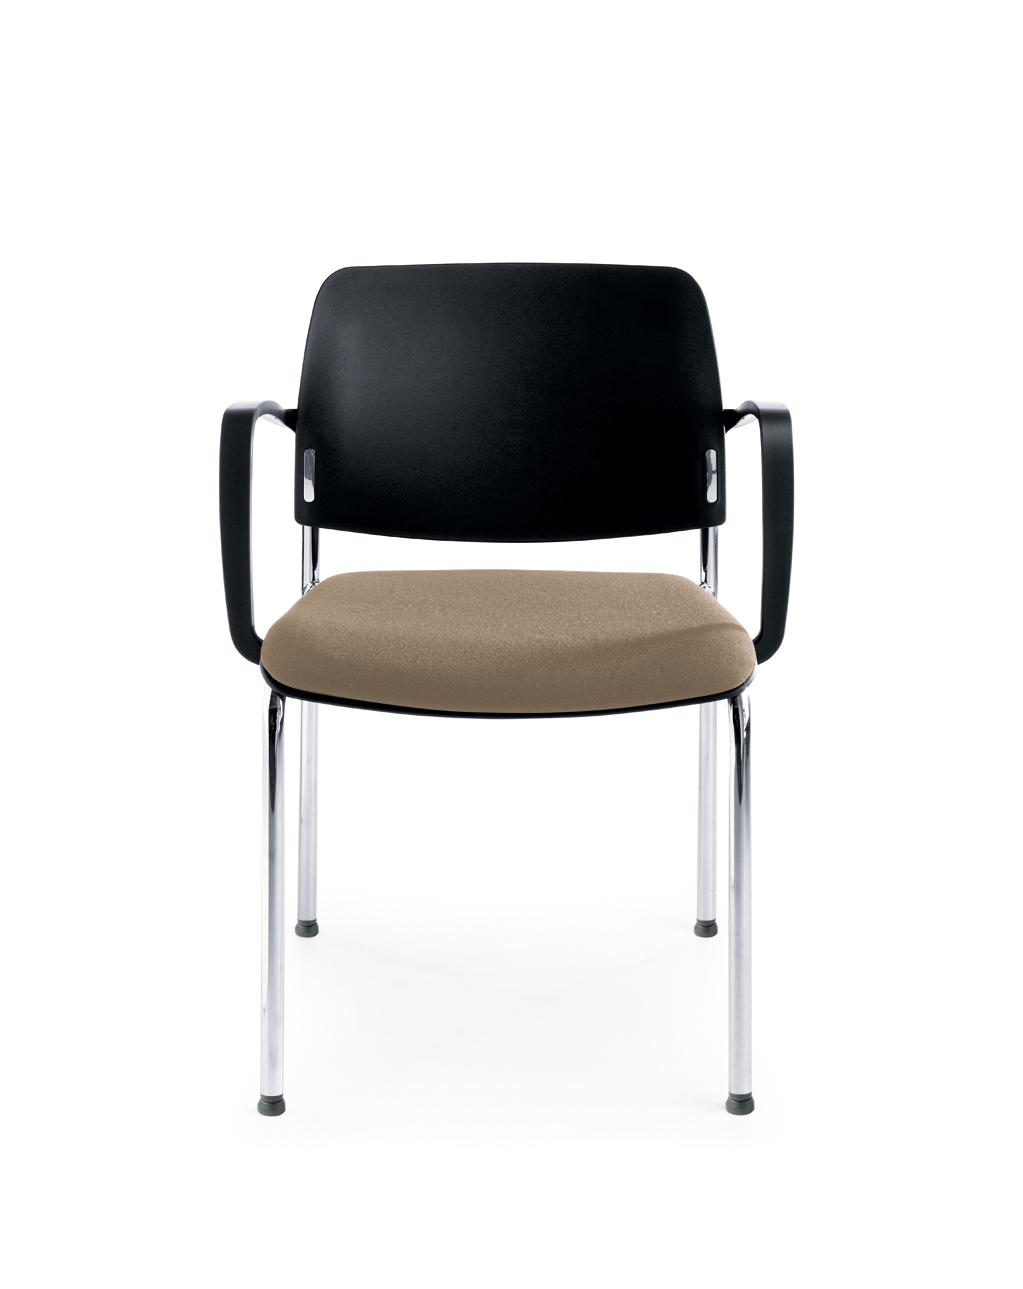 Profim Bit Konferenzstuhl, 4-Fuß, Sitz gepolstert, Rückenlehne aus Kunststoff